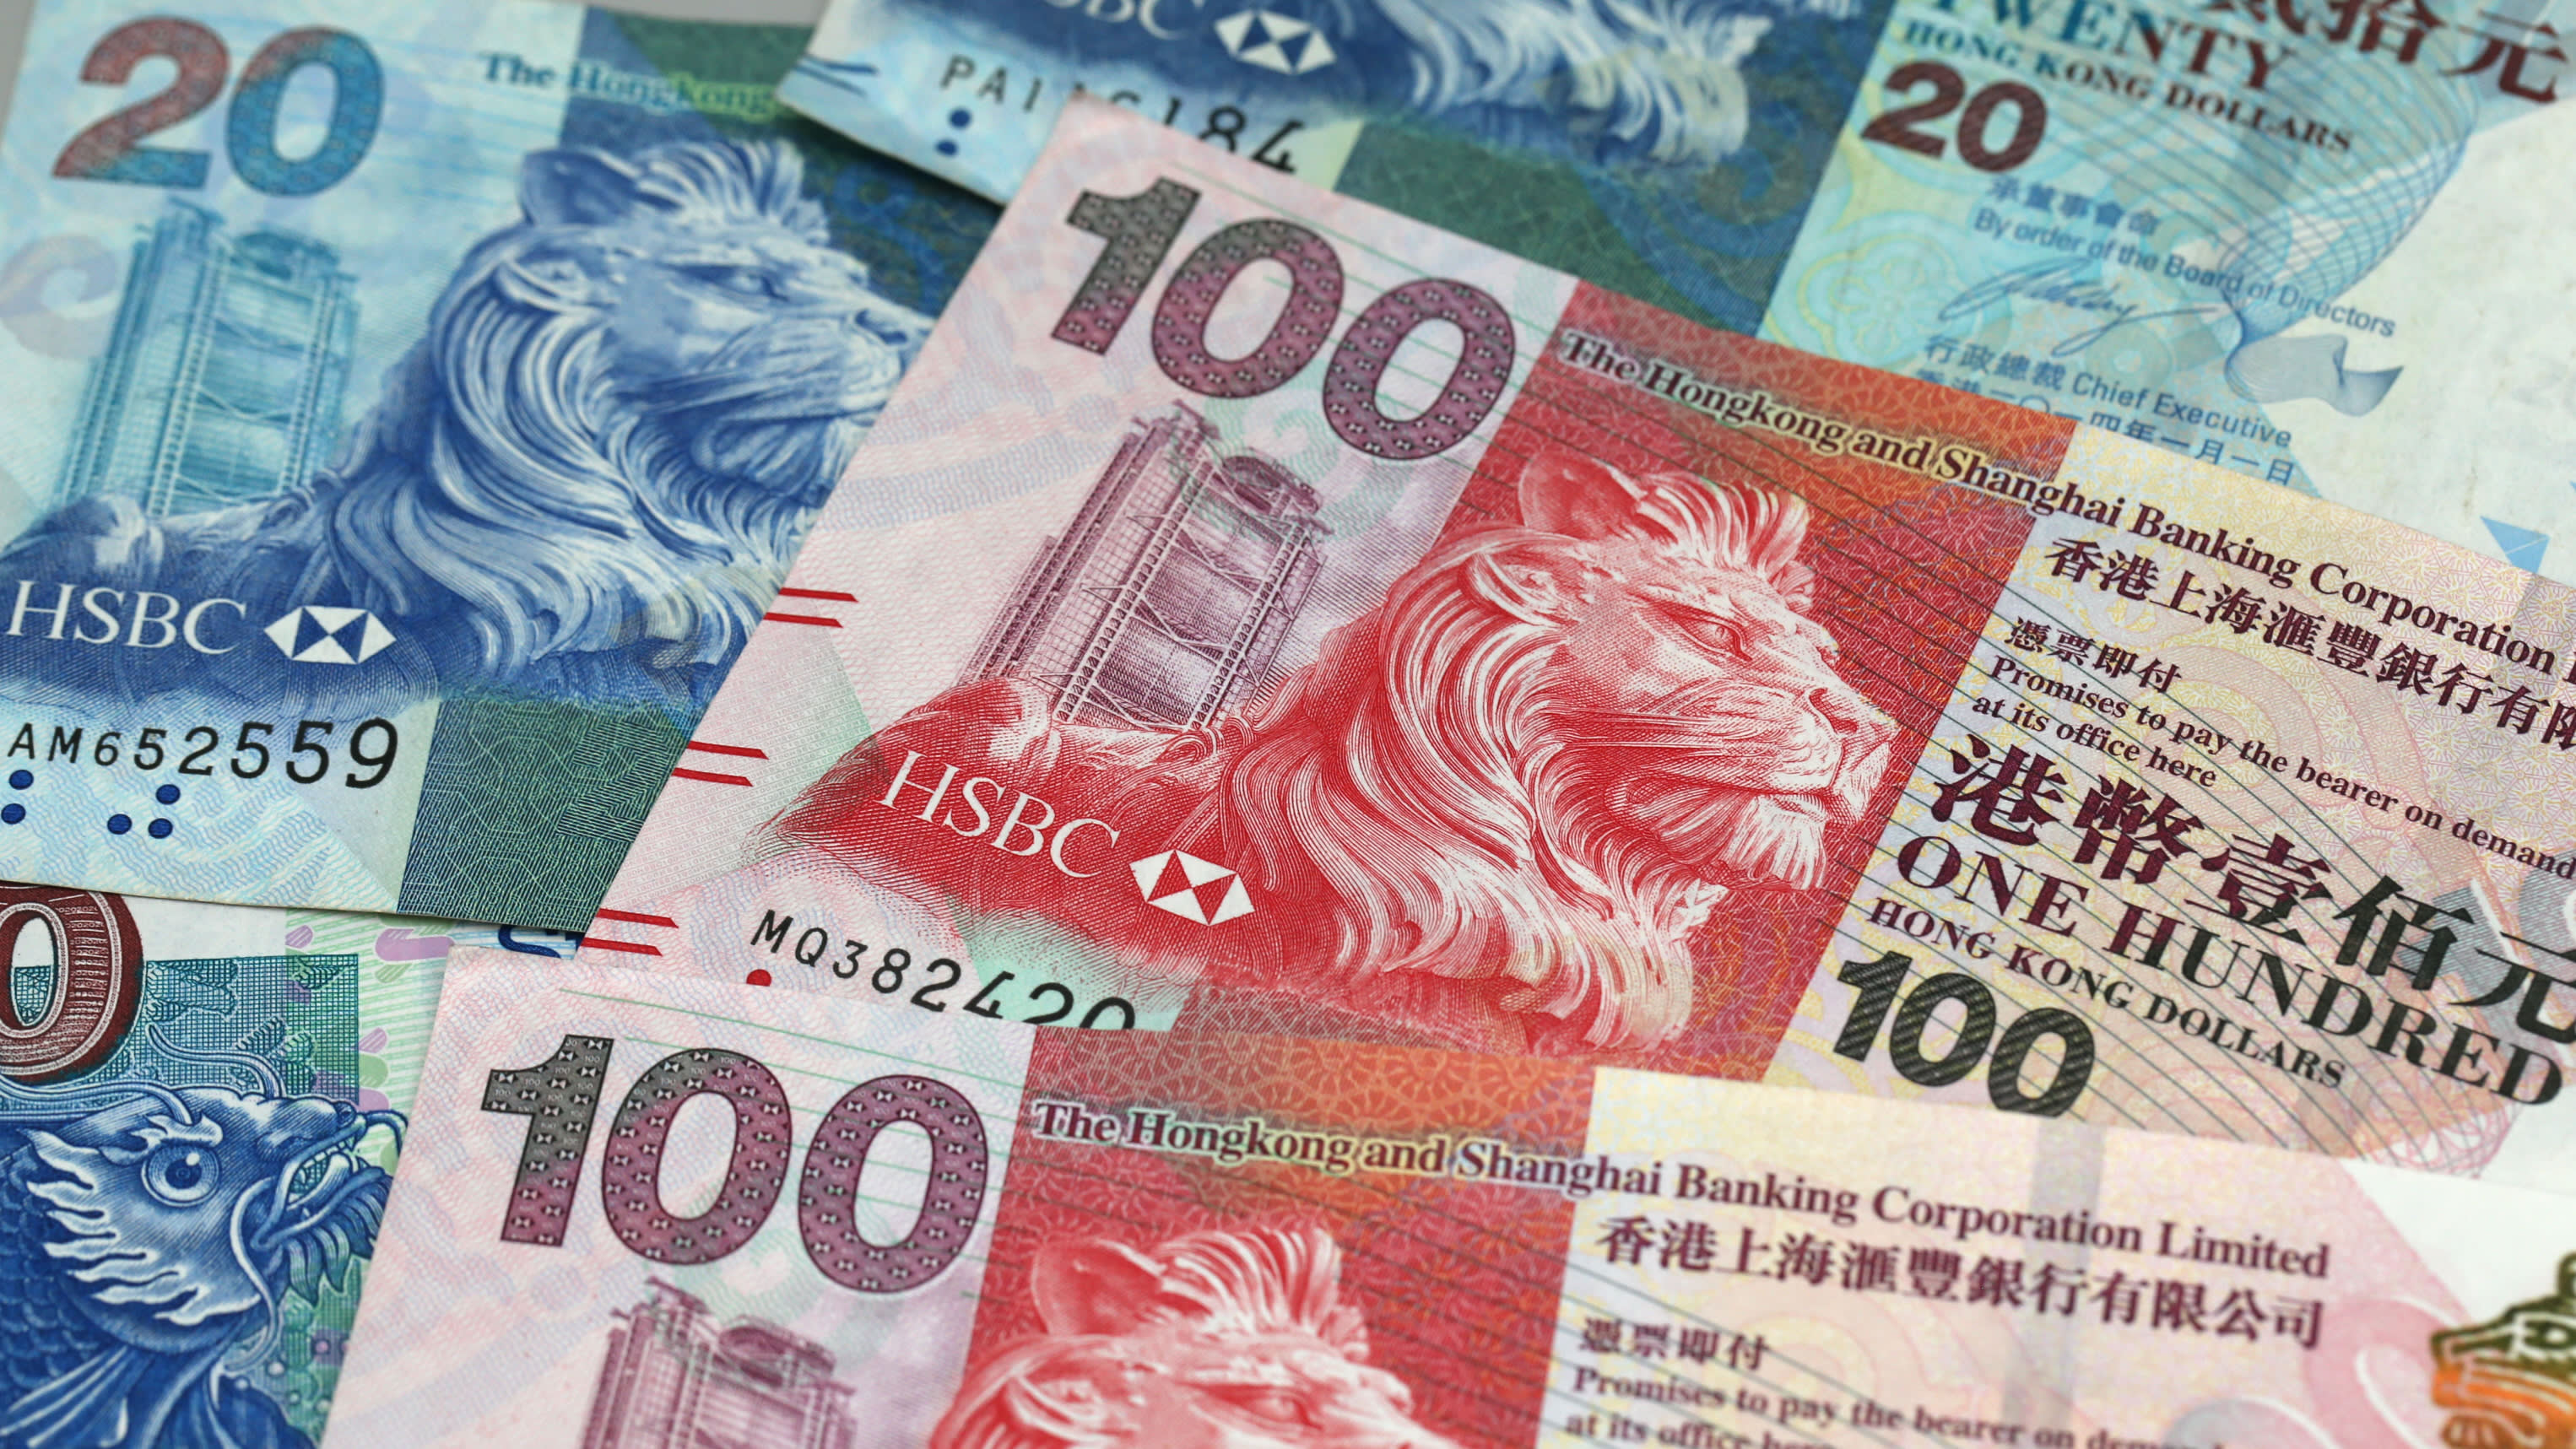 Hkd 899.00 в рублях. Деньги Гонконга. Гонконг денежные купюры. Гонконгский доллар. Гонконгский доллар, валюта Гонконга..